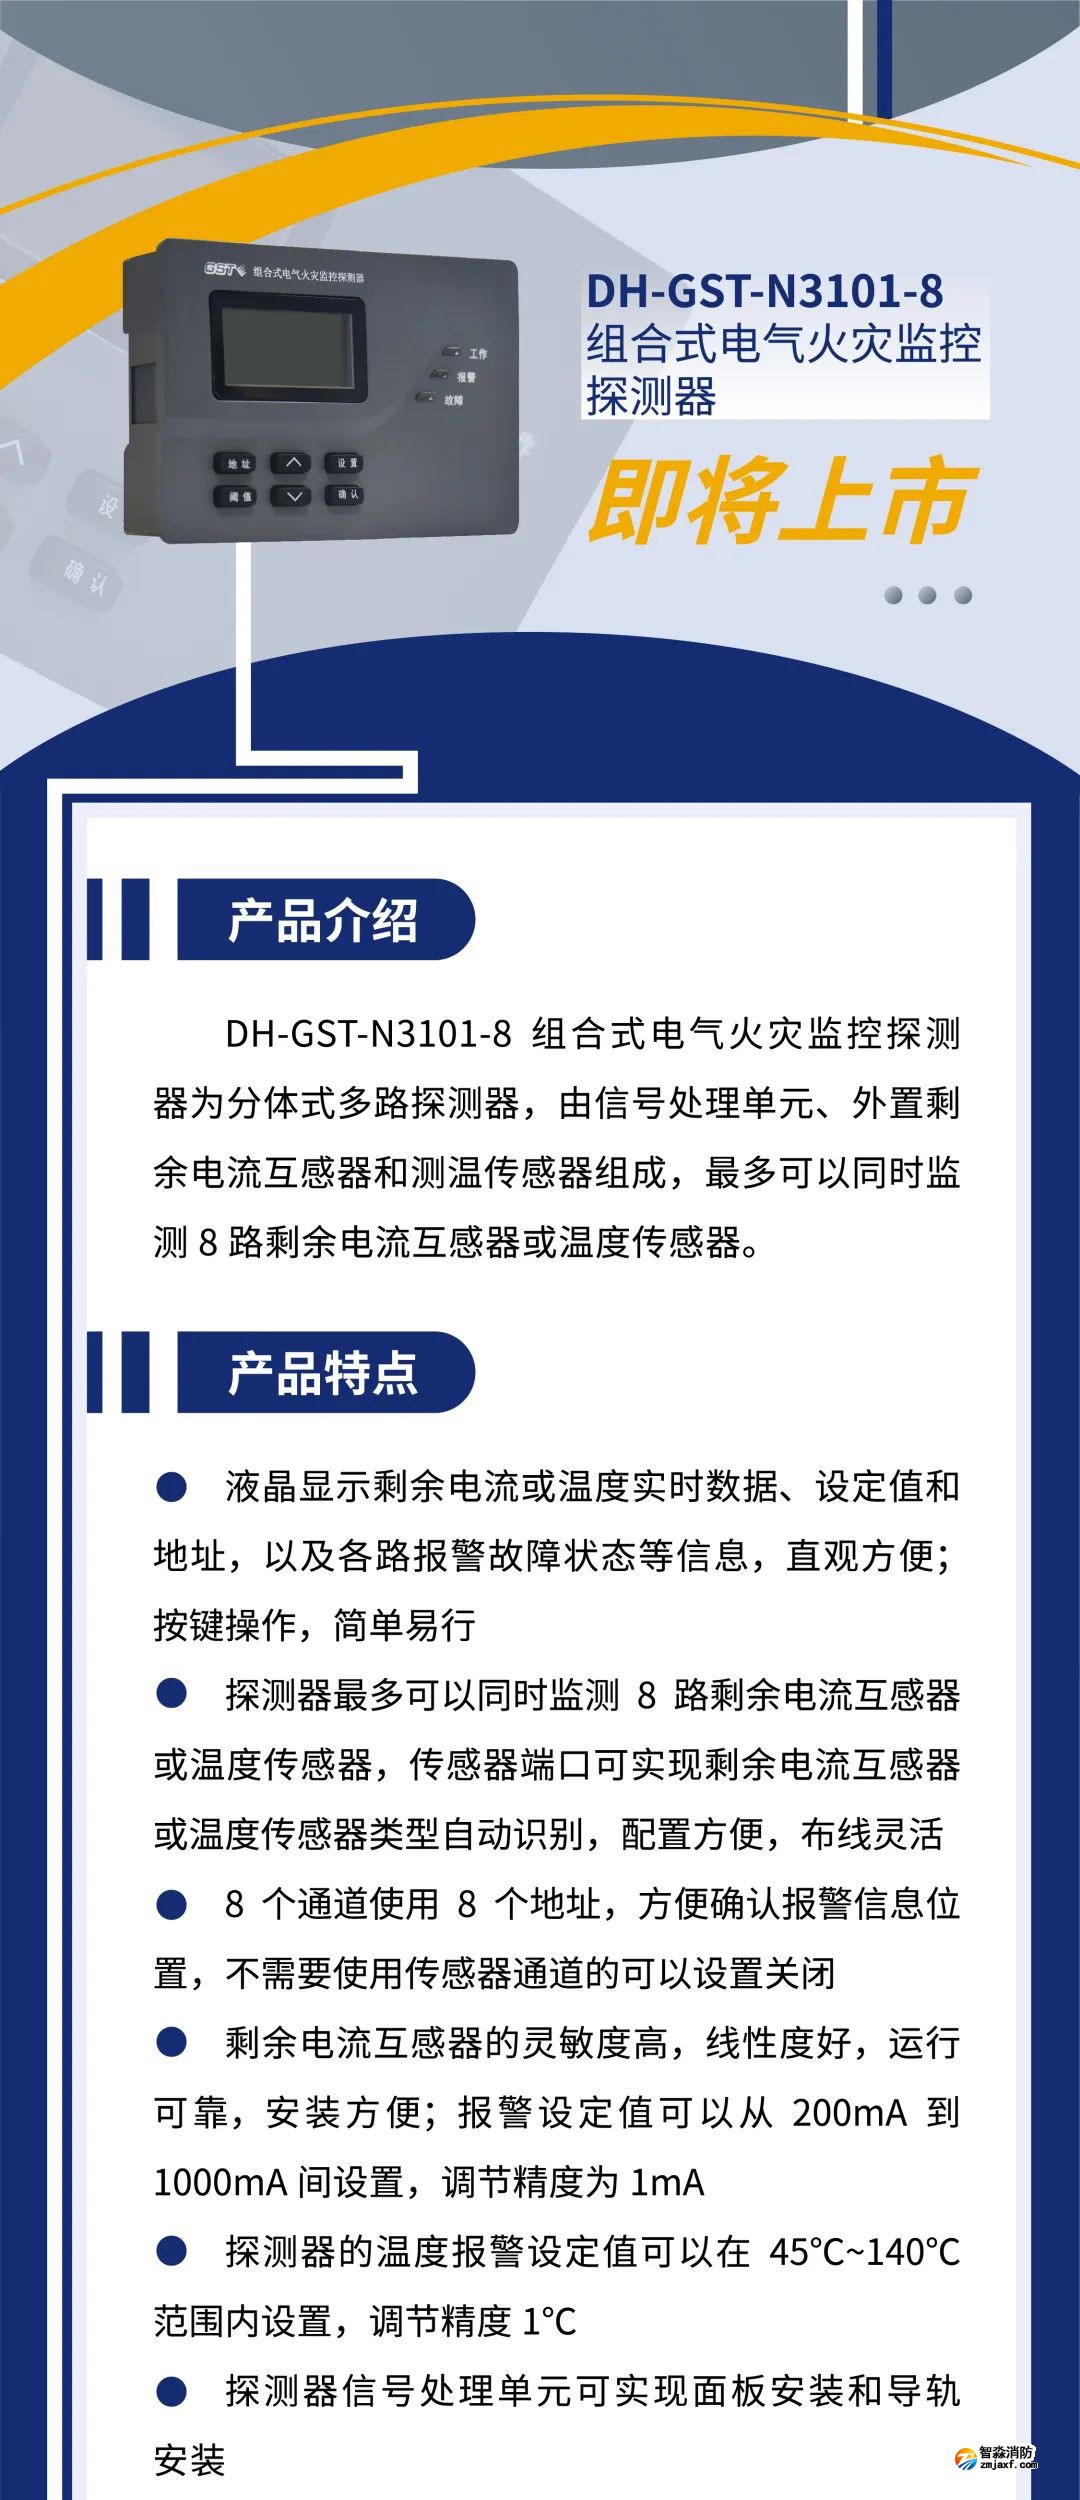 江南登录网址
新一代组合式电气火灾监控探测器产品上市